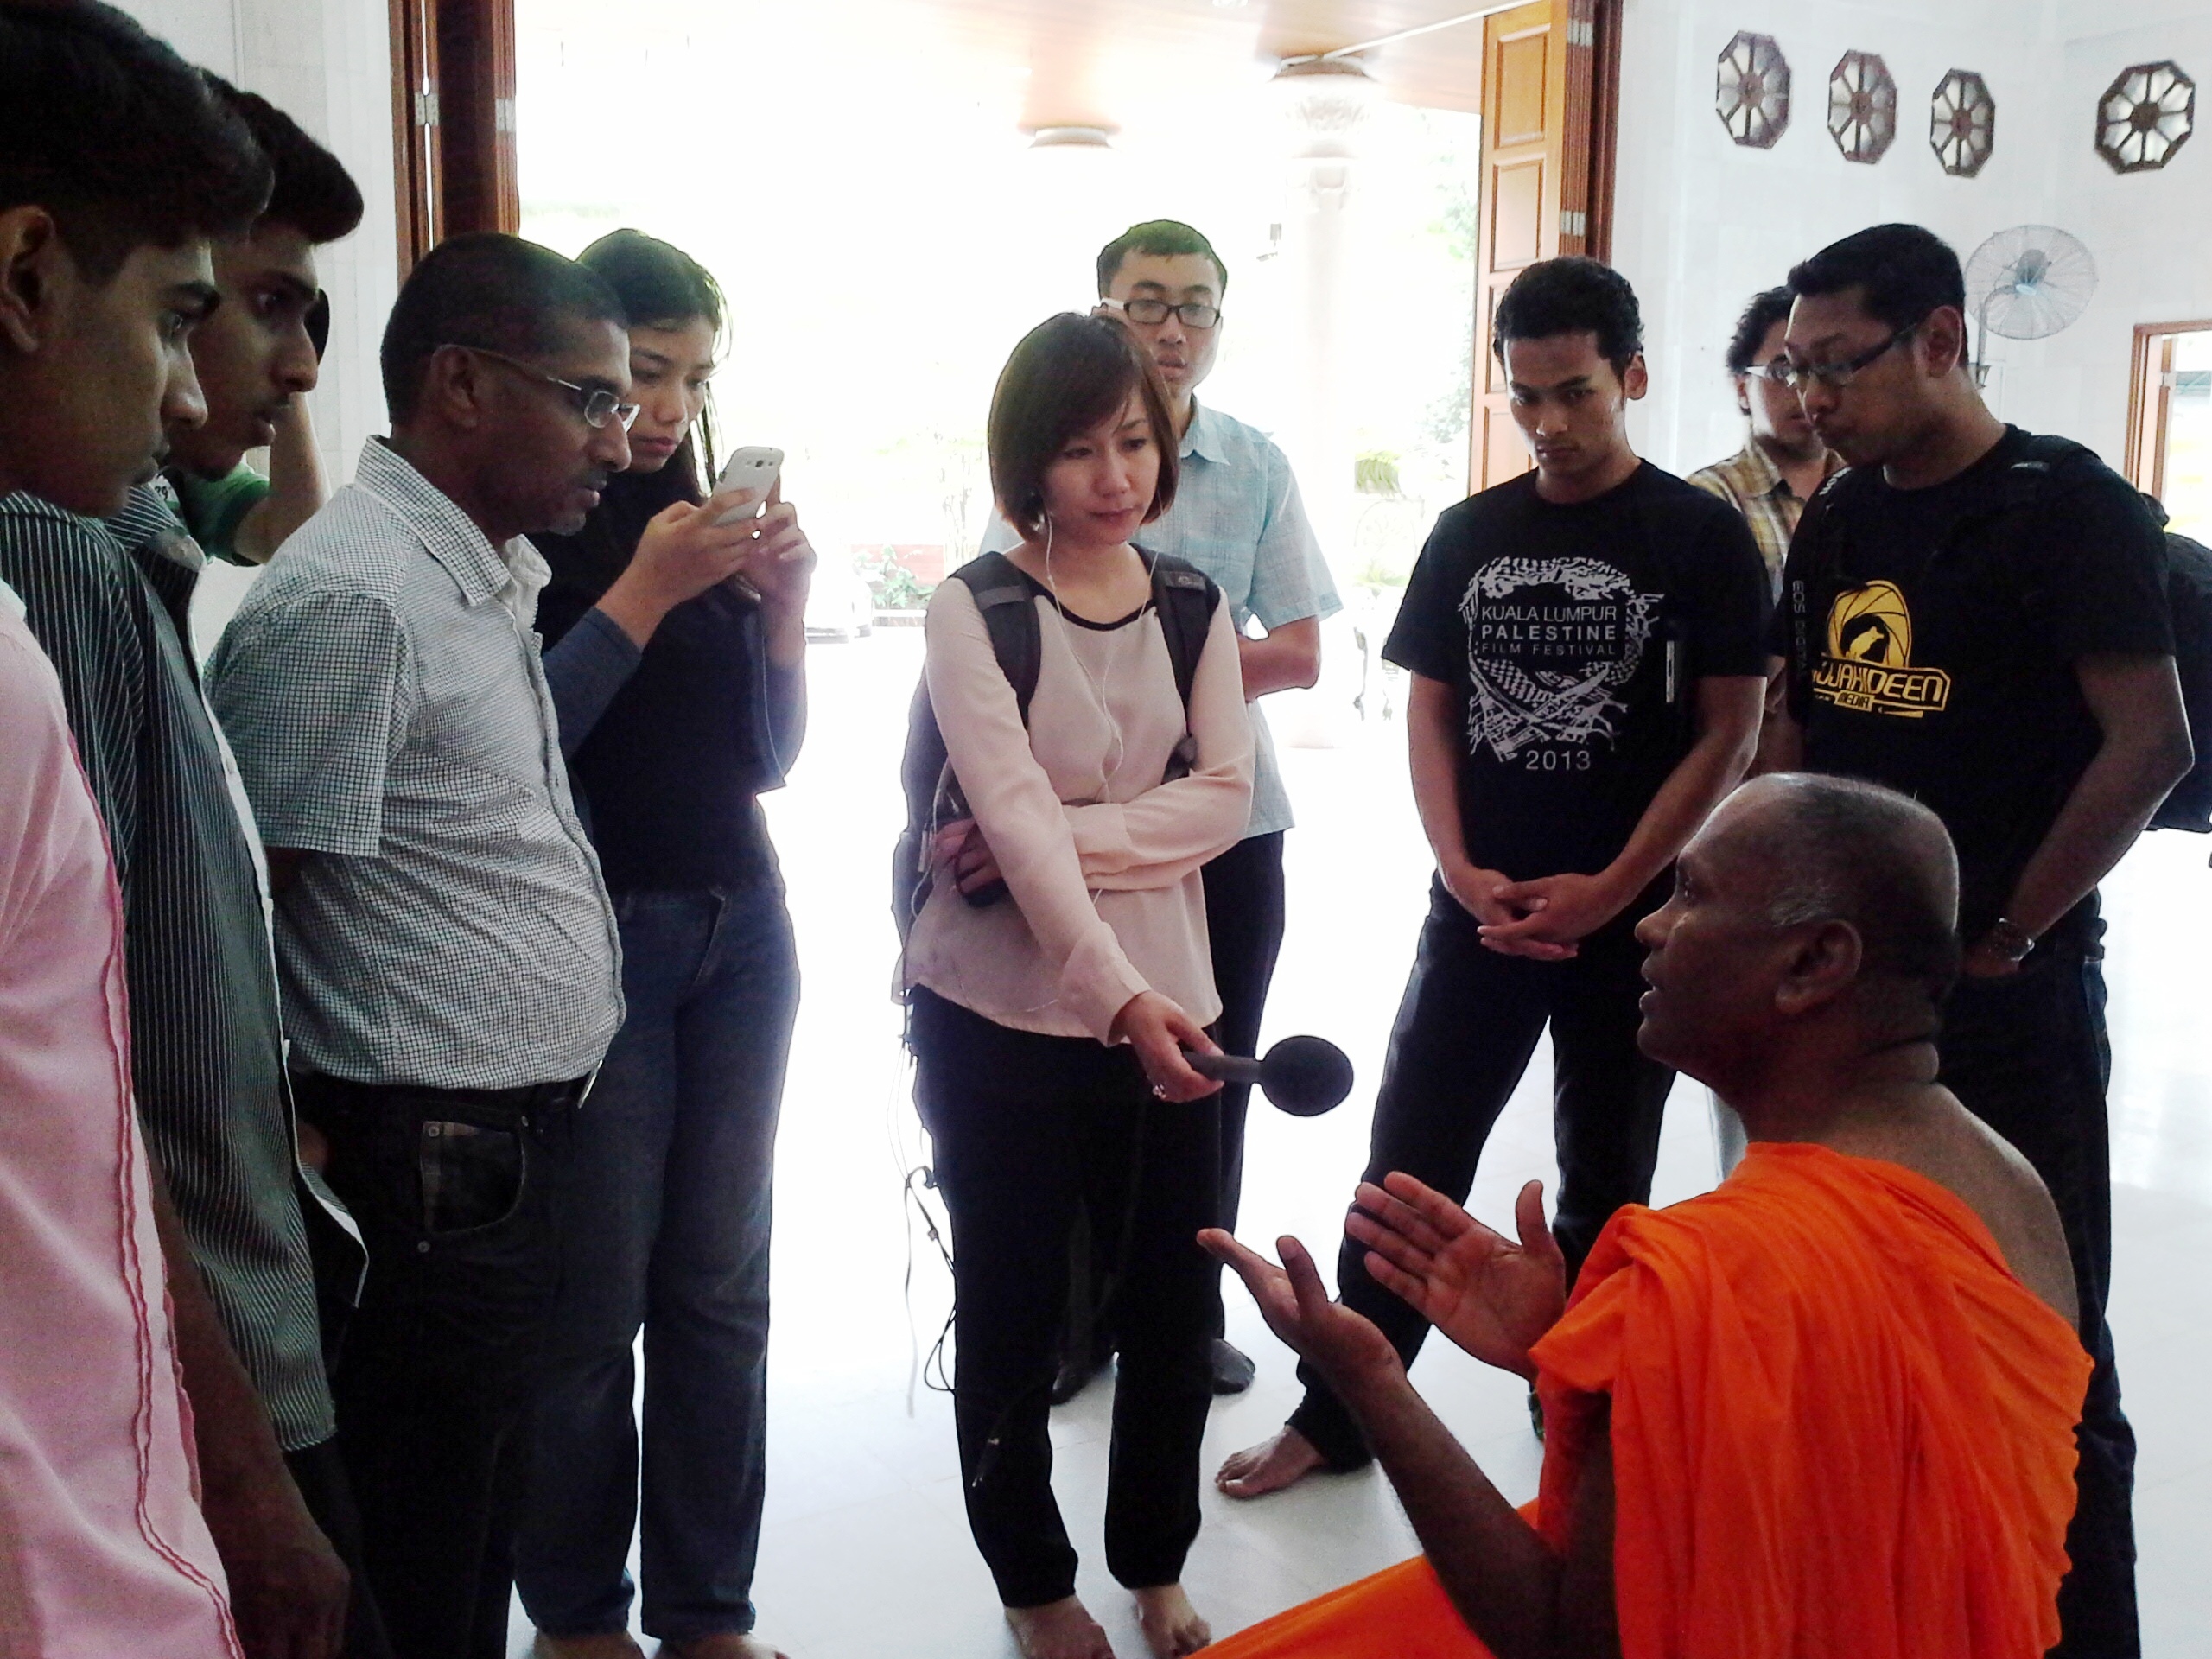 Konvoi Rumah Ibadat turut membawa peserta ke wat Buddha.